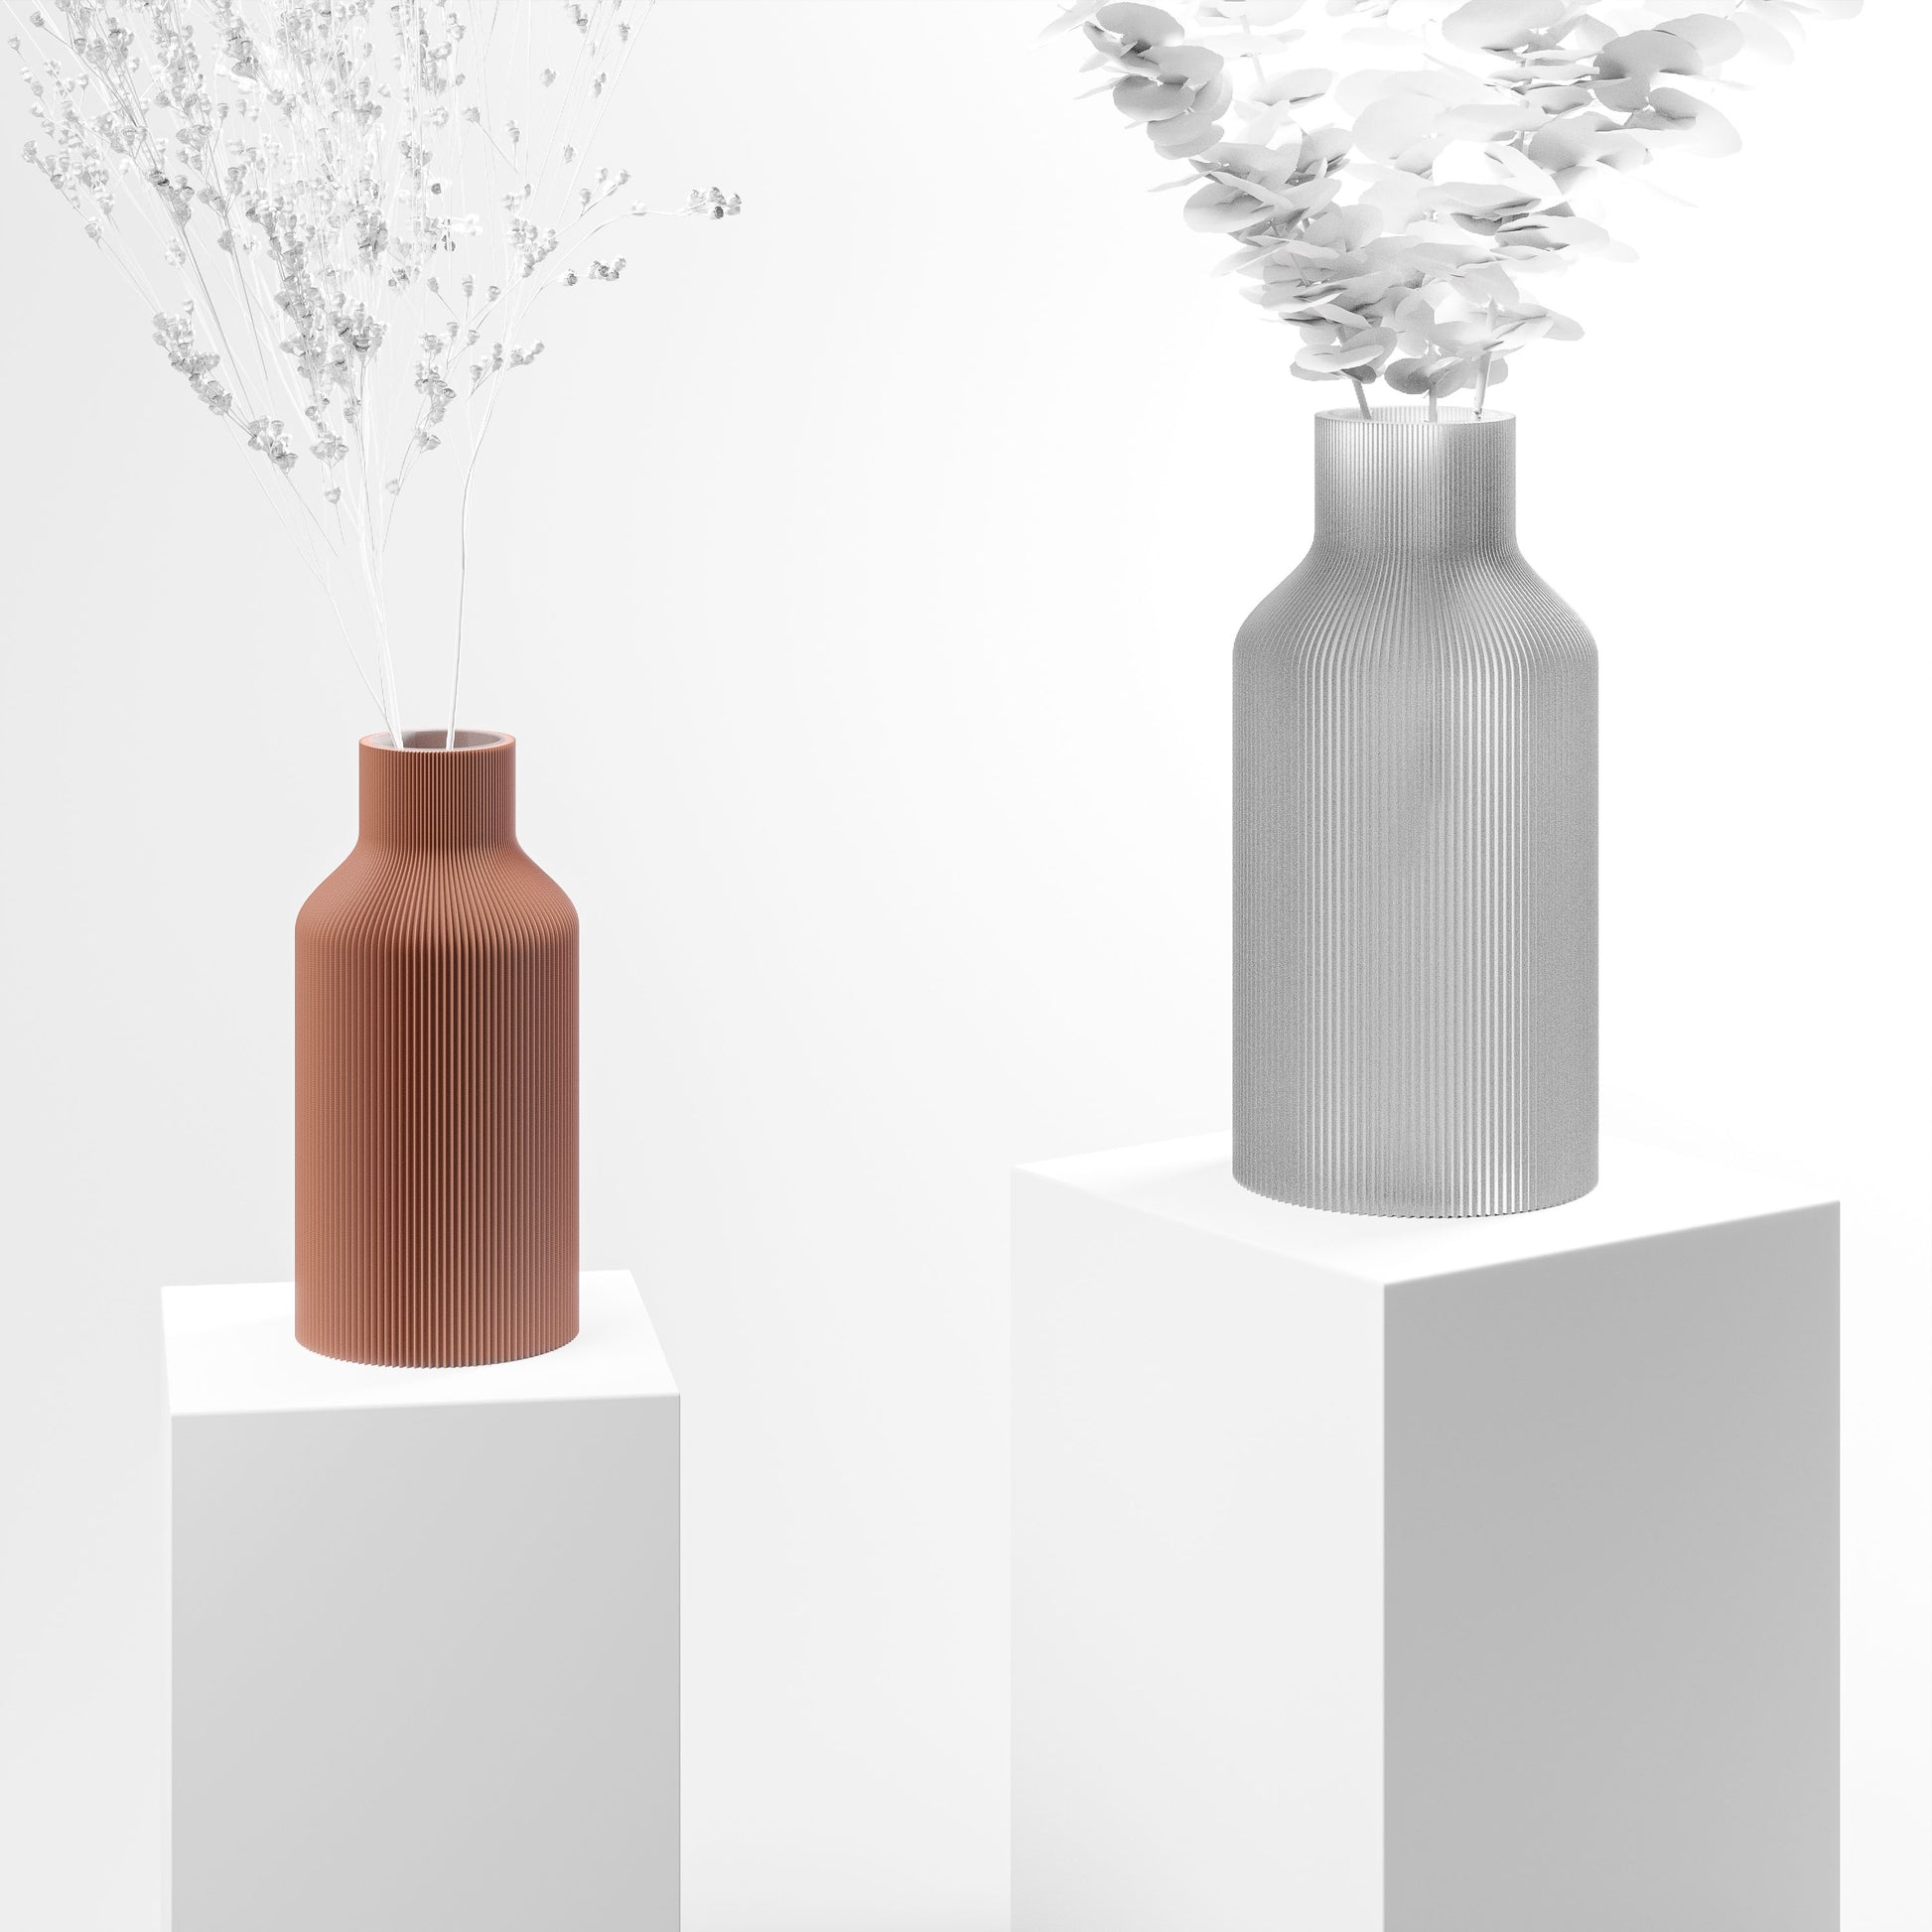 Stylische 3D Druck Vase mit feinen Rillen aus Stuttgart | 100% recyclebar | Form: Flasche | Farbe: Terracotta matt 